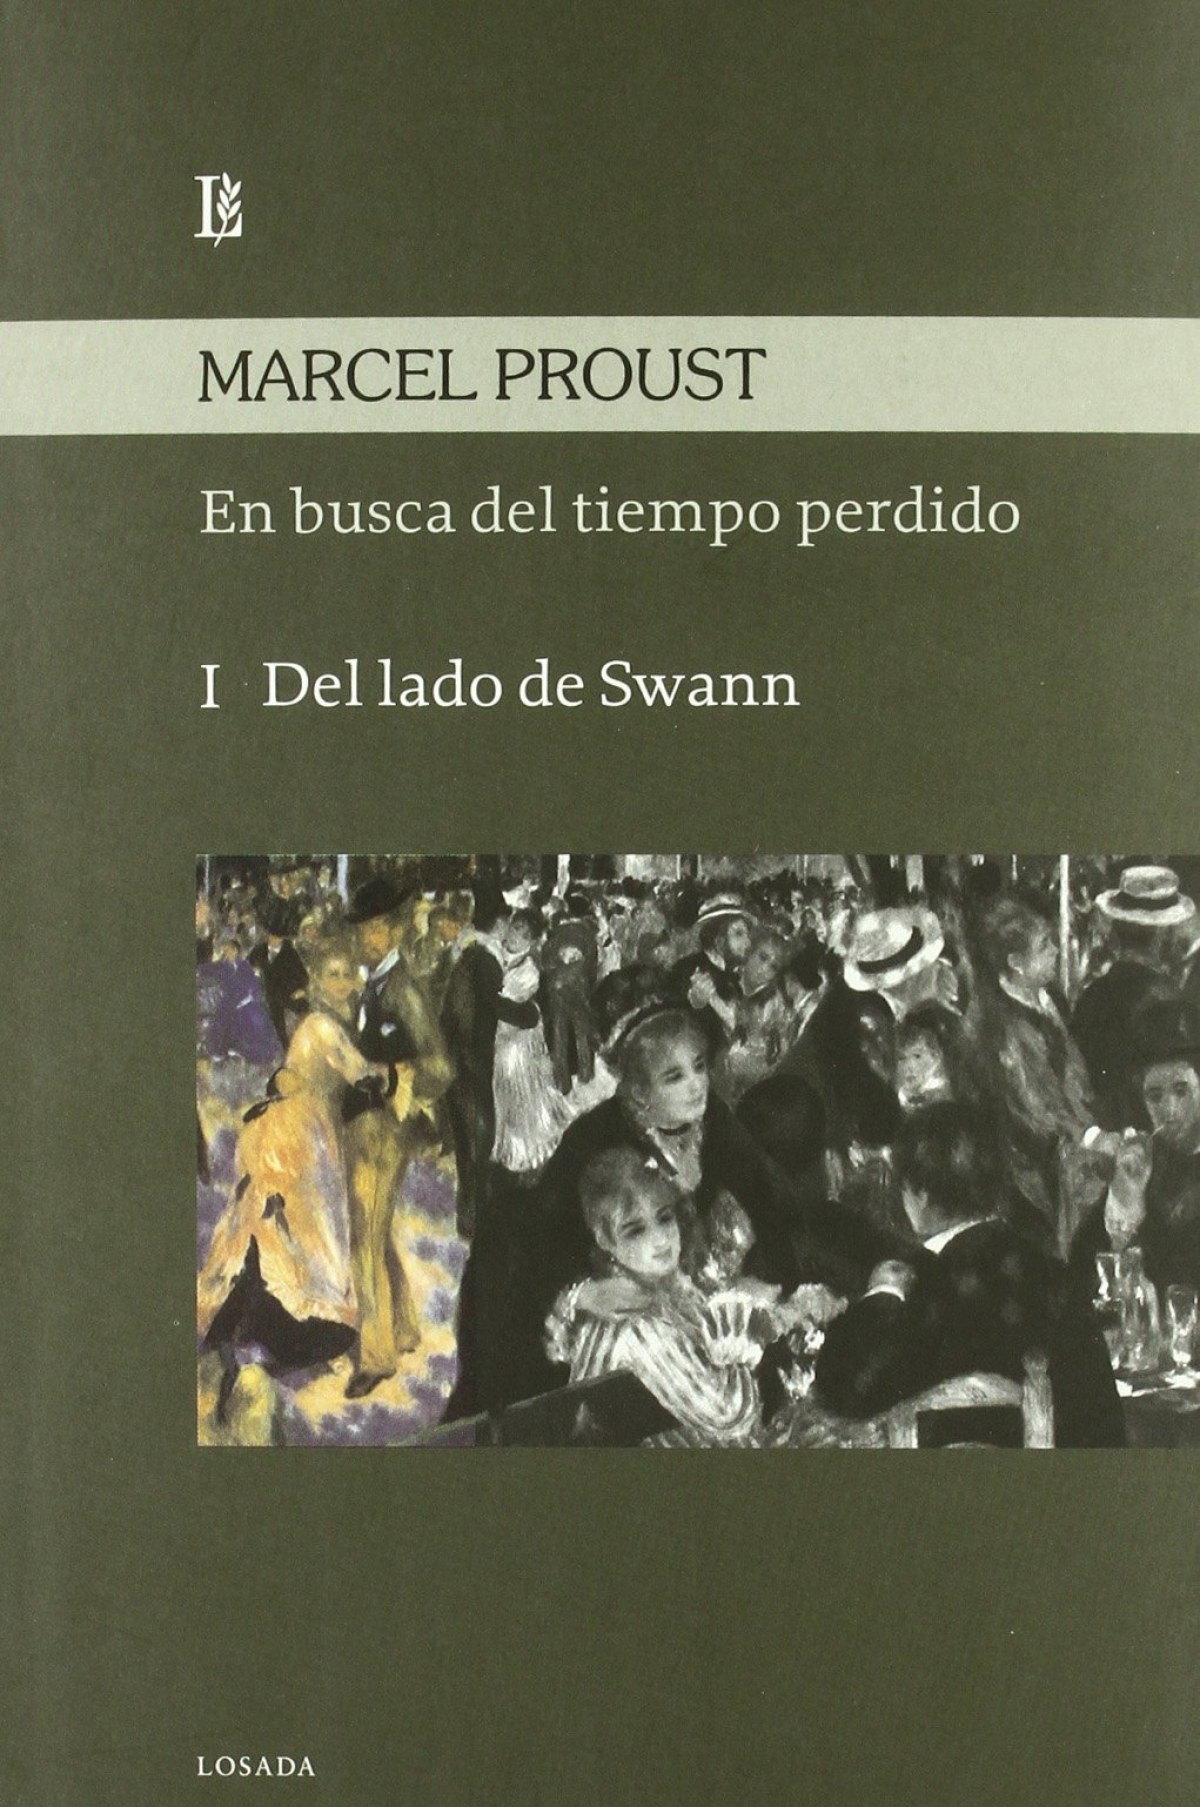 I.en busca del tiempo perdido. del lado de swann - Proust, Marcel